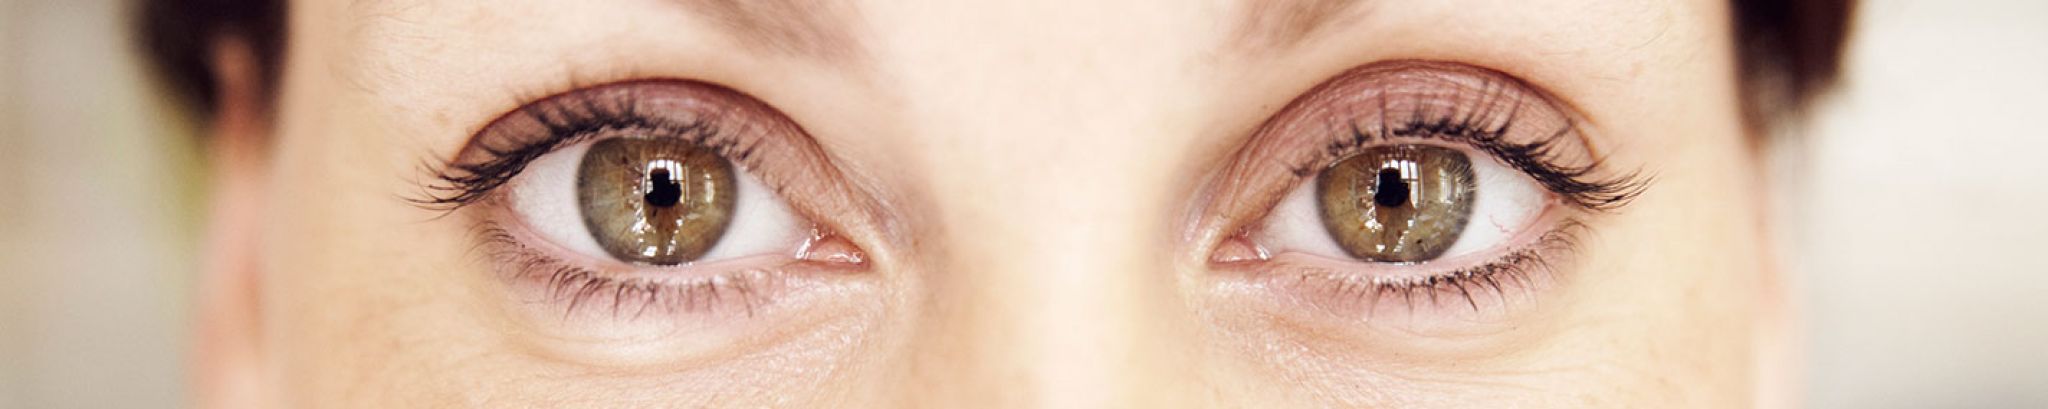 Dry Eye Syndrom: Augentropfen aus eigenem Blut für trockene Augen